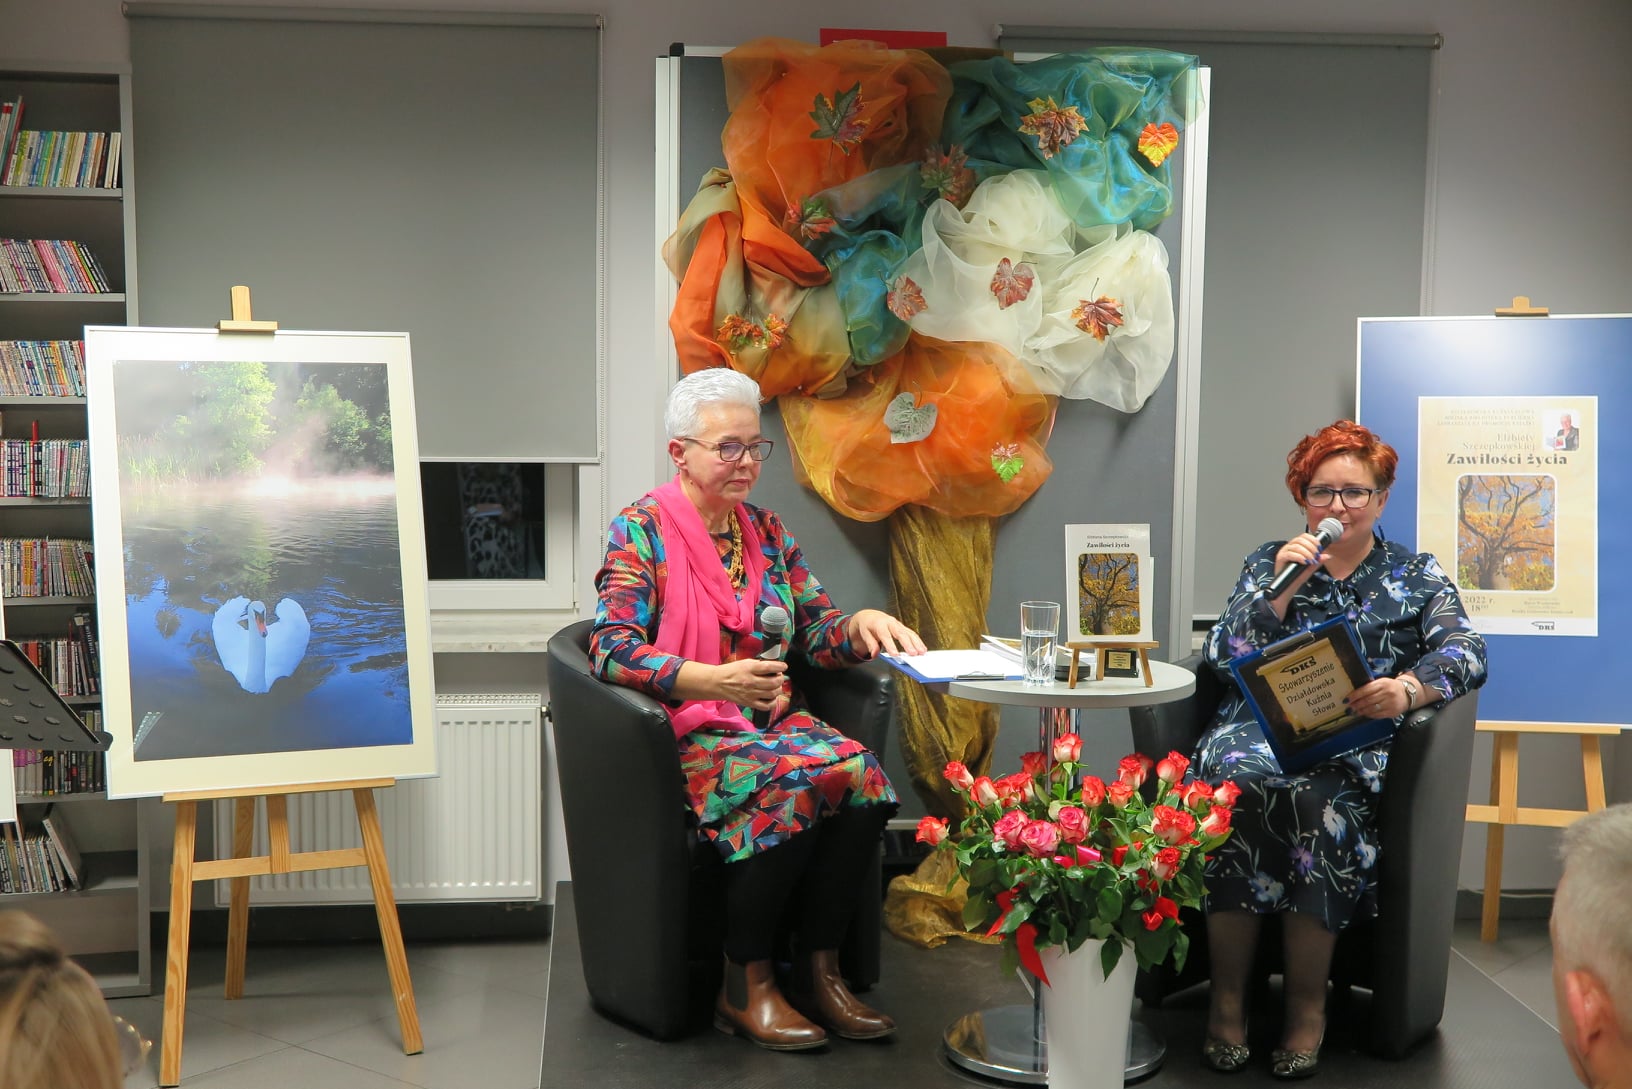 dwie kobiety siedzą na fotelach na podeście obie trzymają w rękach mikrofony, przed nimi na podłodze wazon z kwiatami, z tyłu po lewej zdjęci na sztaludze 